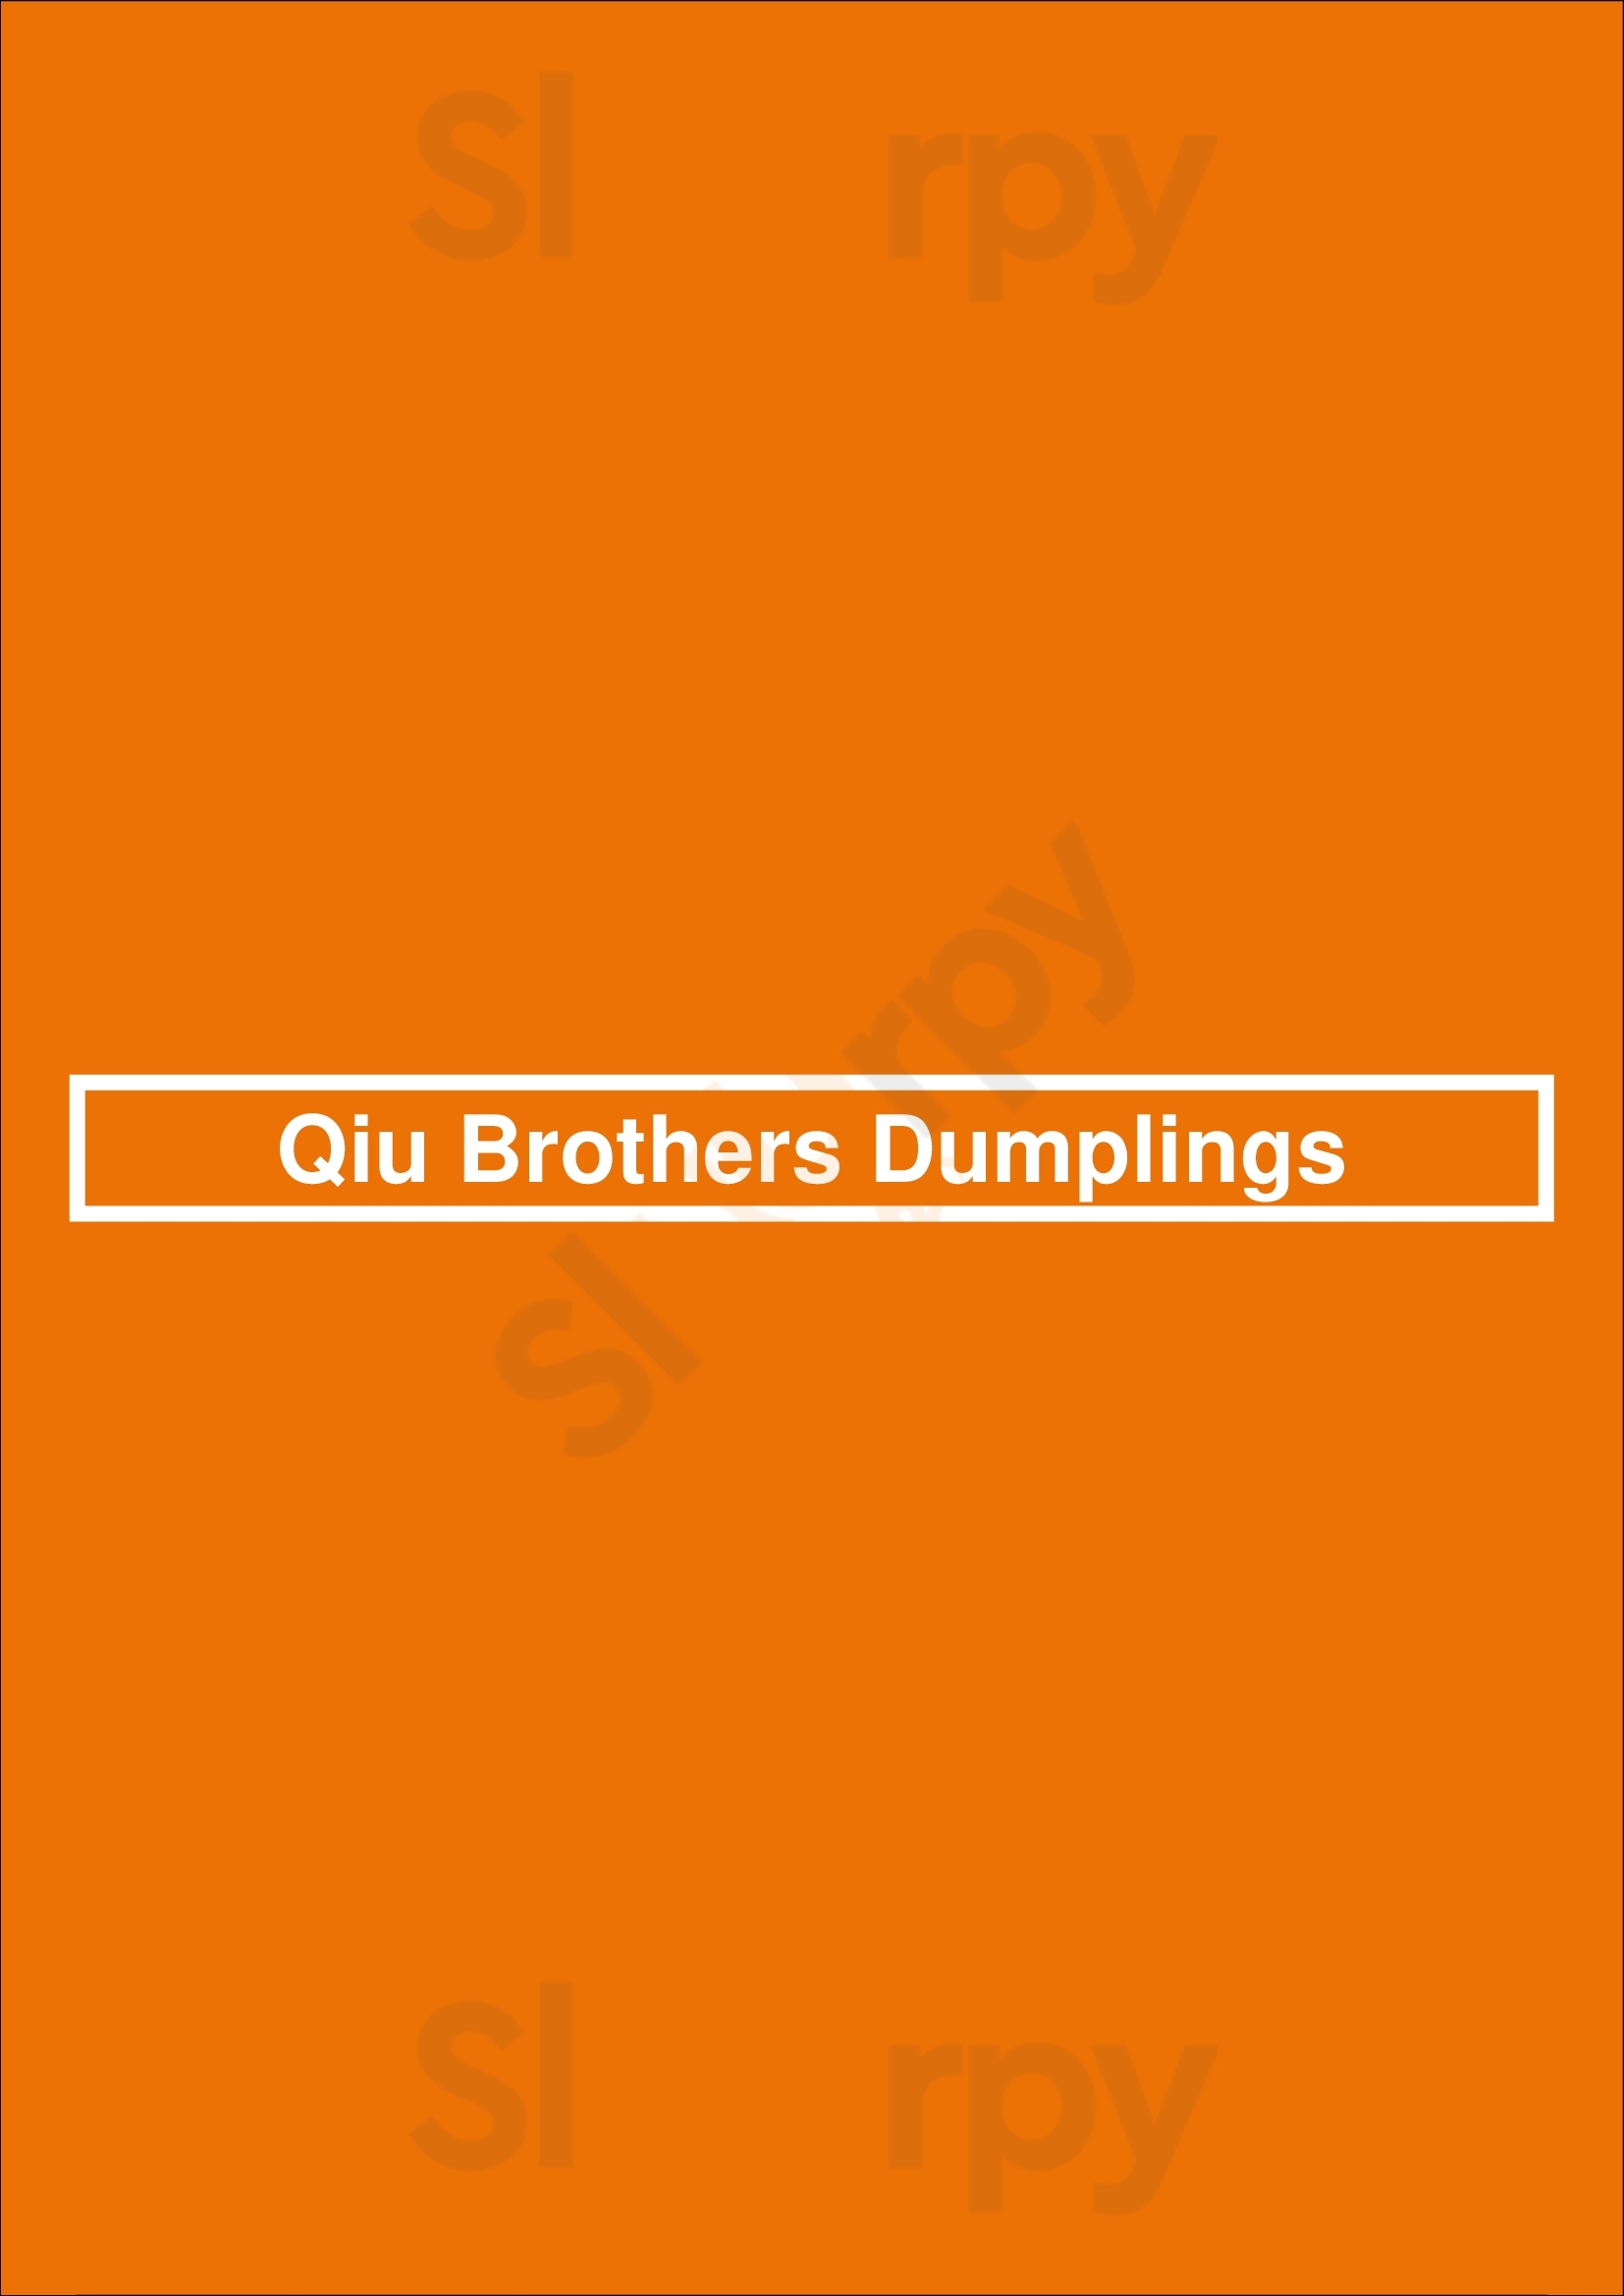 Qiu Brothers Dumplings Halifax Menu - 1